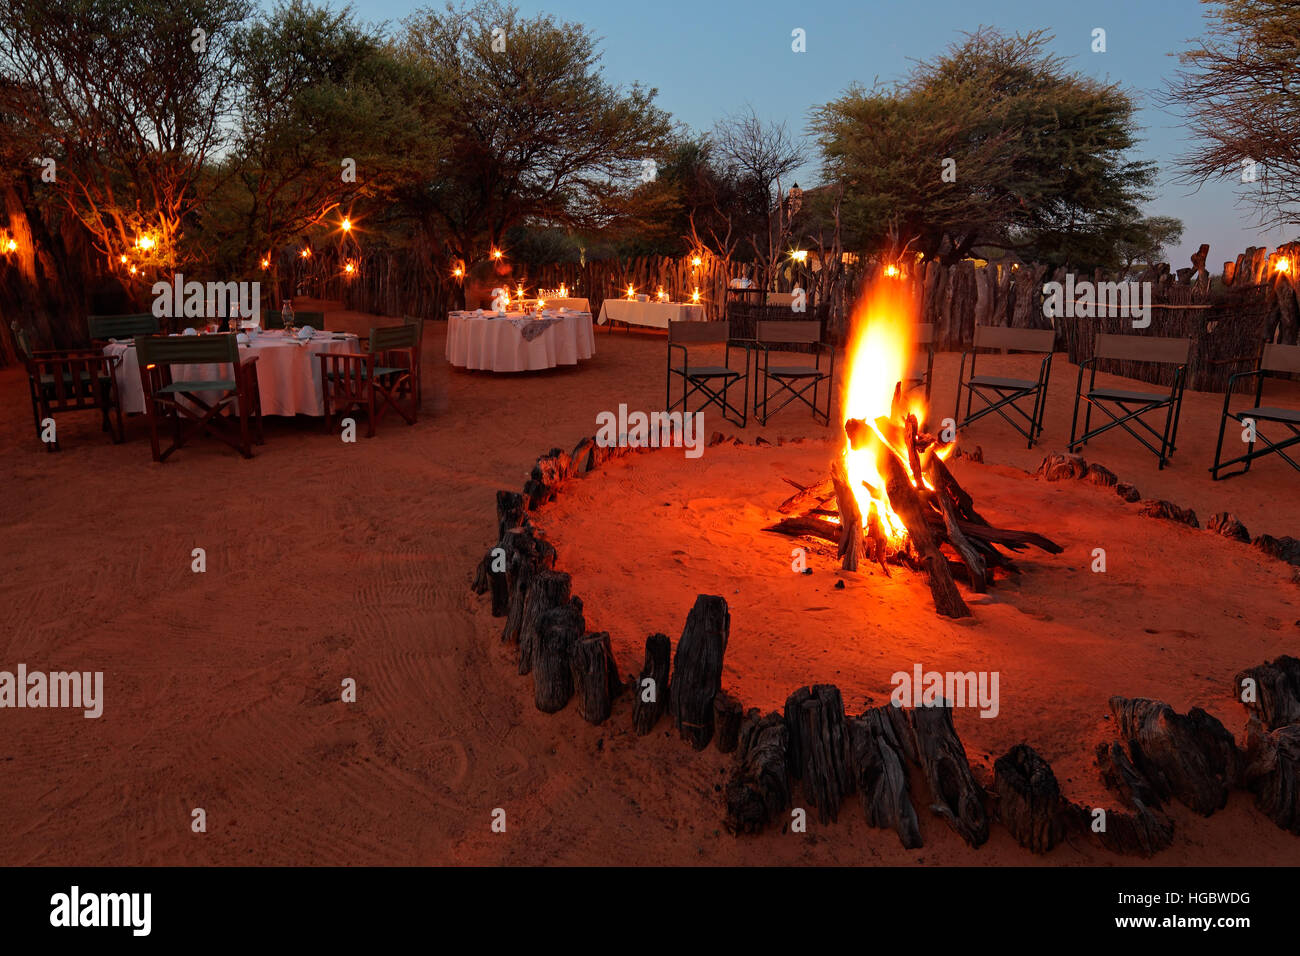 Camp de nuit et décoré de tables pour la restauration de plein air safari Banque D'Images